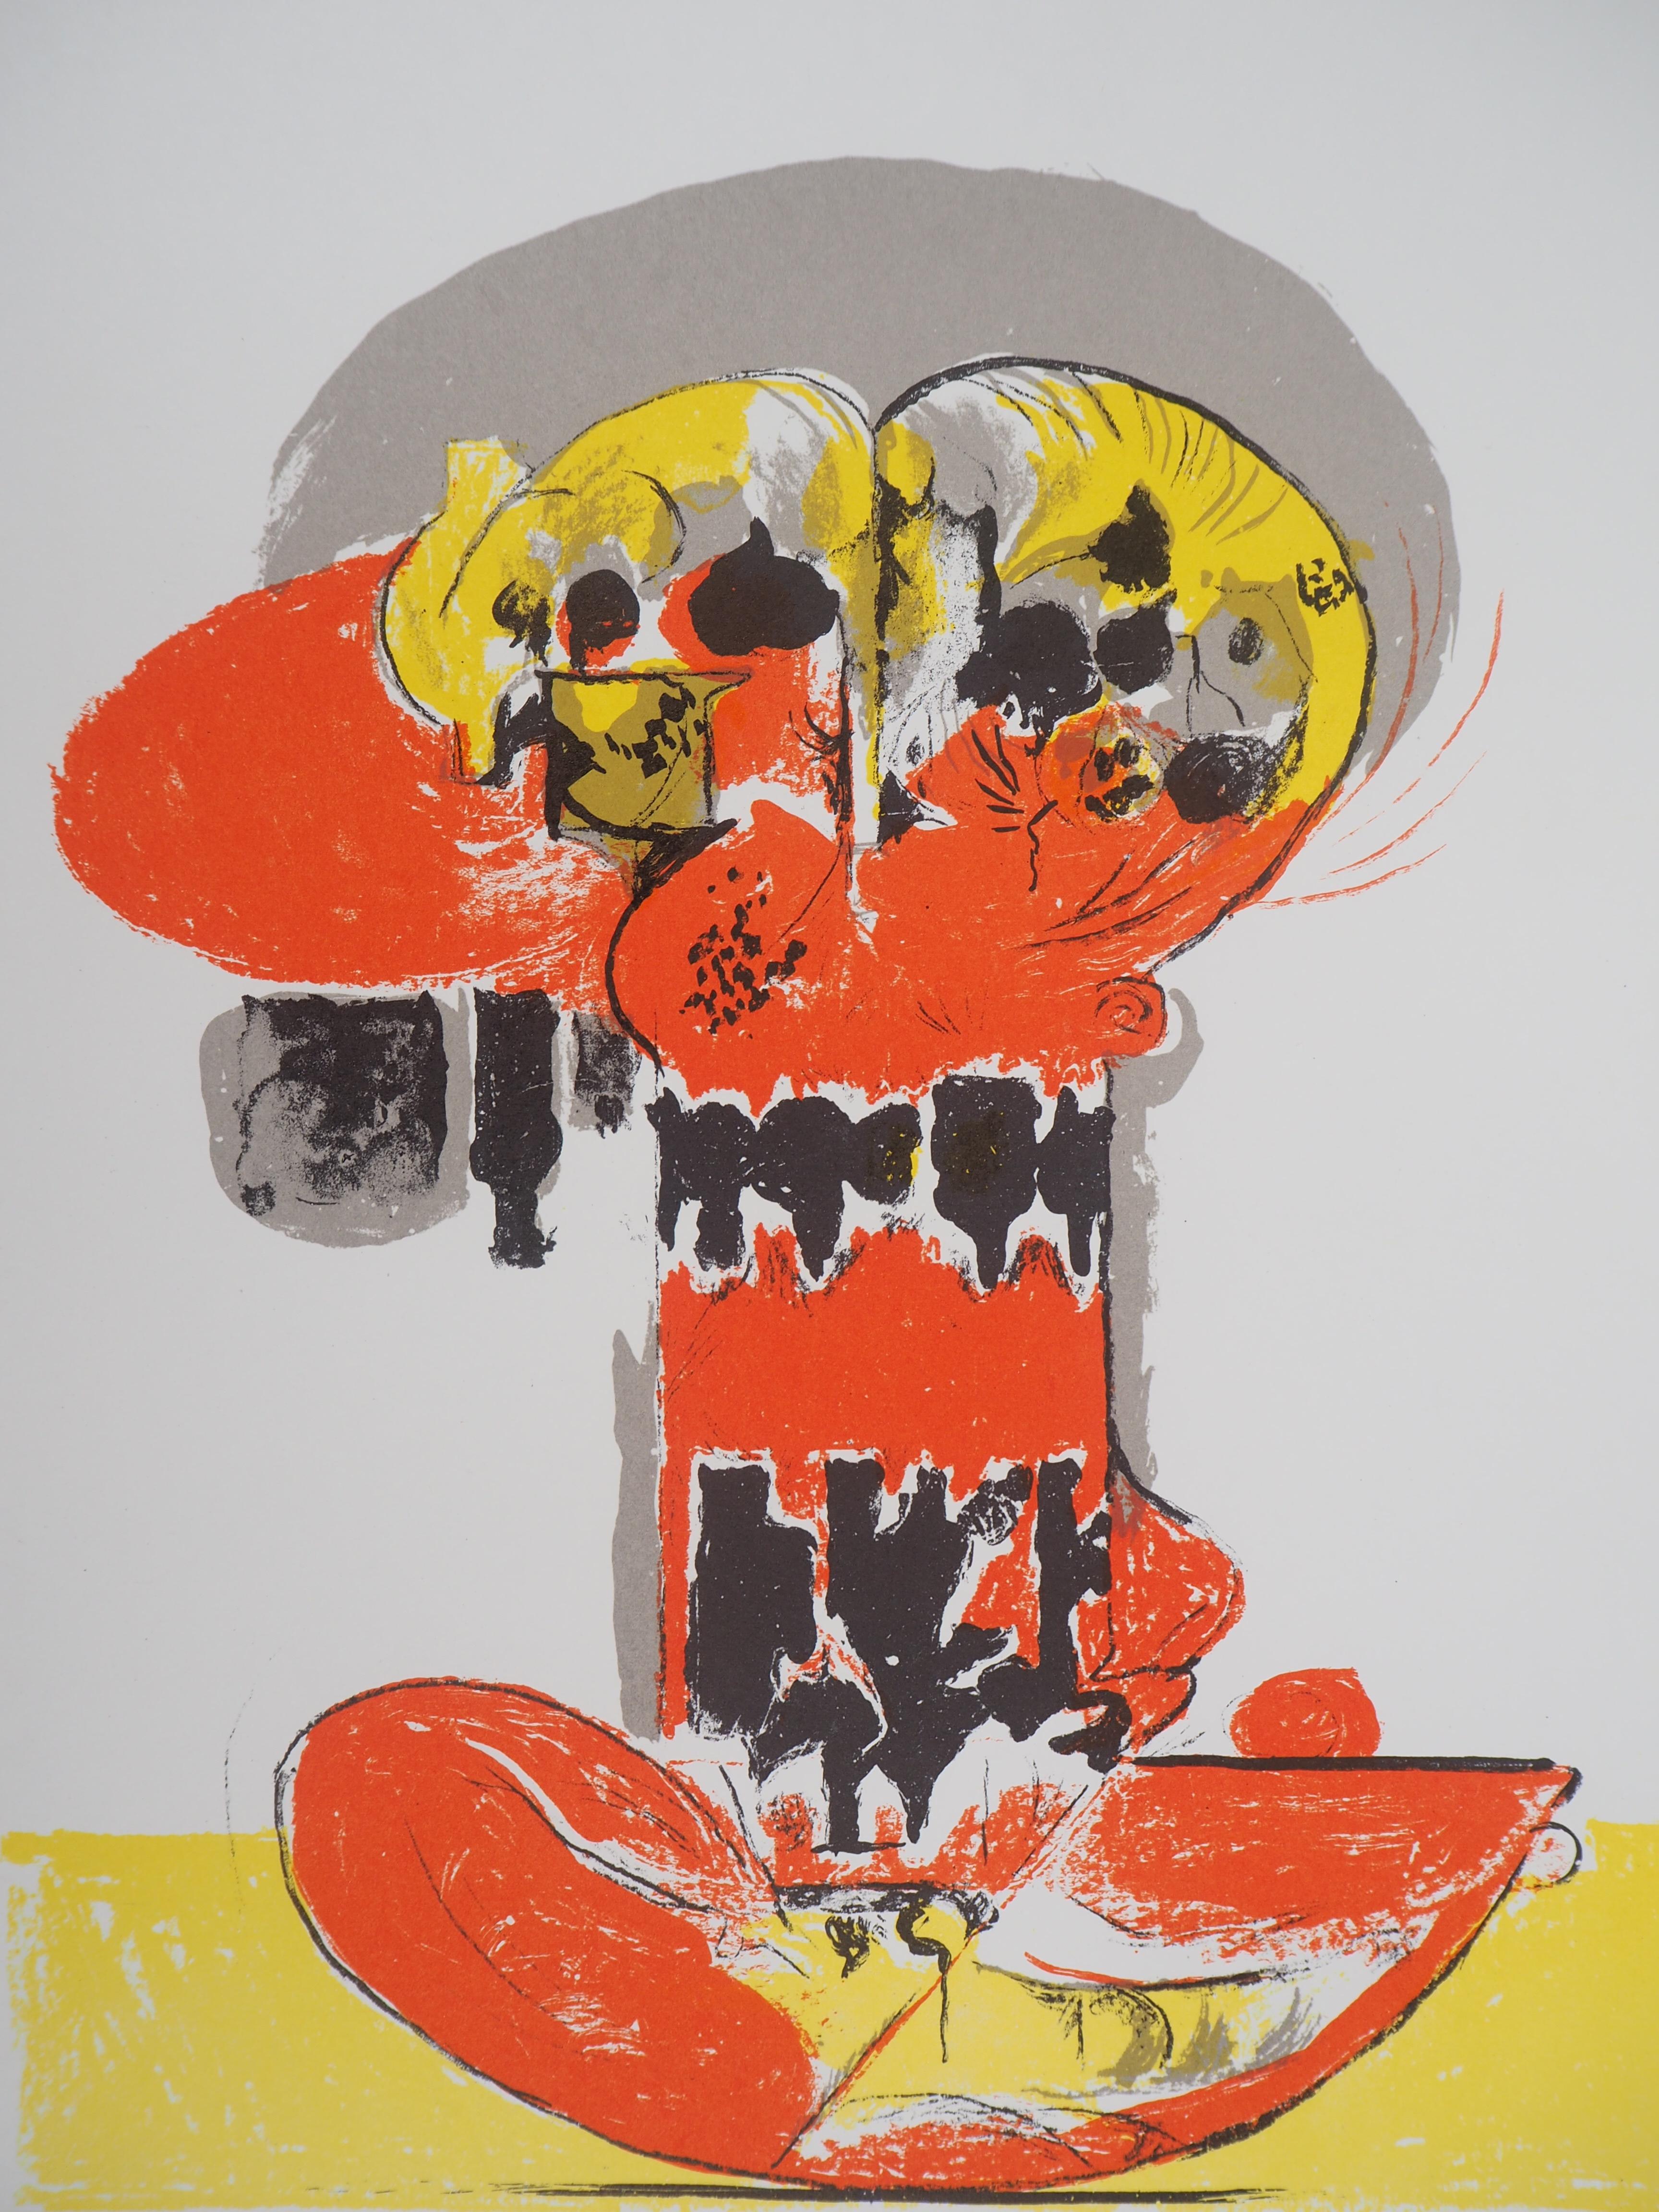 Composition avec jaune et rouge - Lithographie originale de Mourlot, 1972 - Print de Graham Sutherland